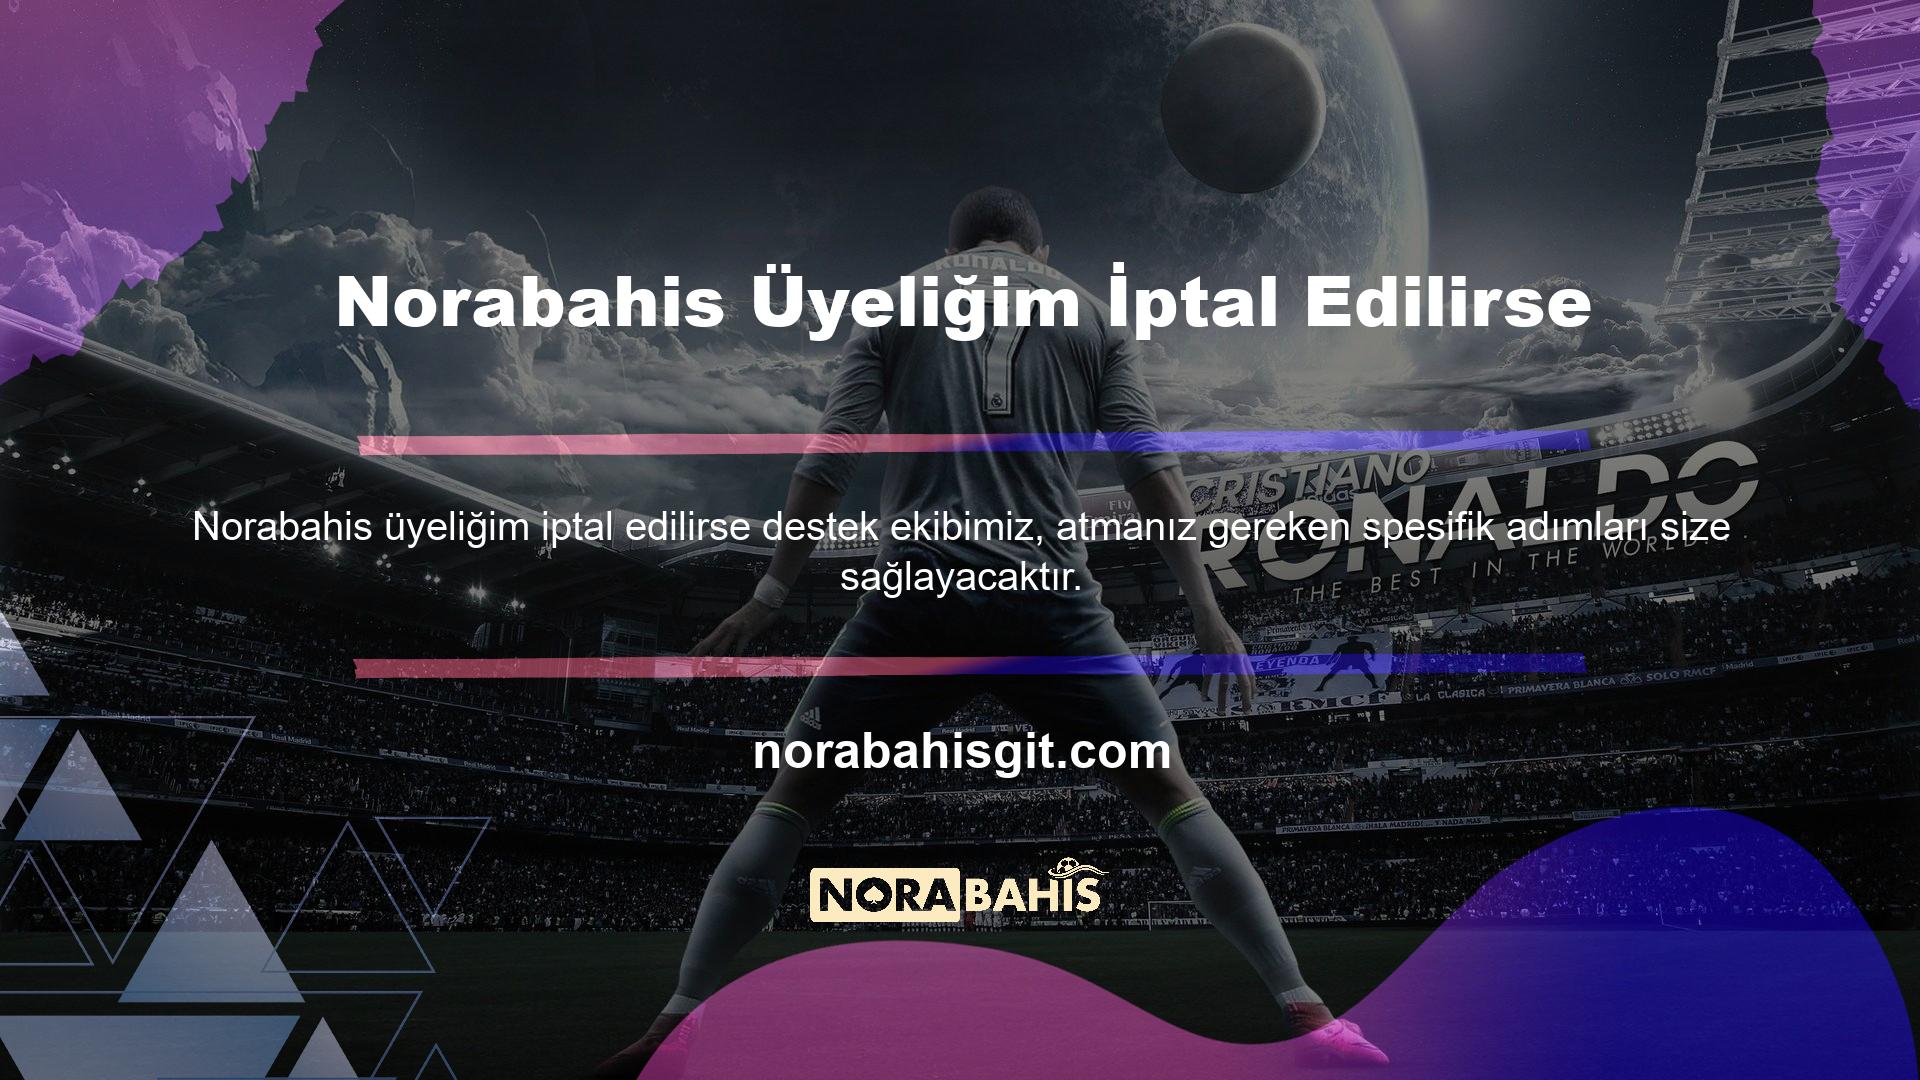 Norabahis, profesyonel bahis sunan ve 7/24 erişilebilen özel bir platformdur